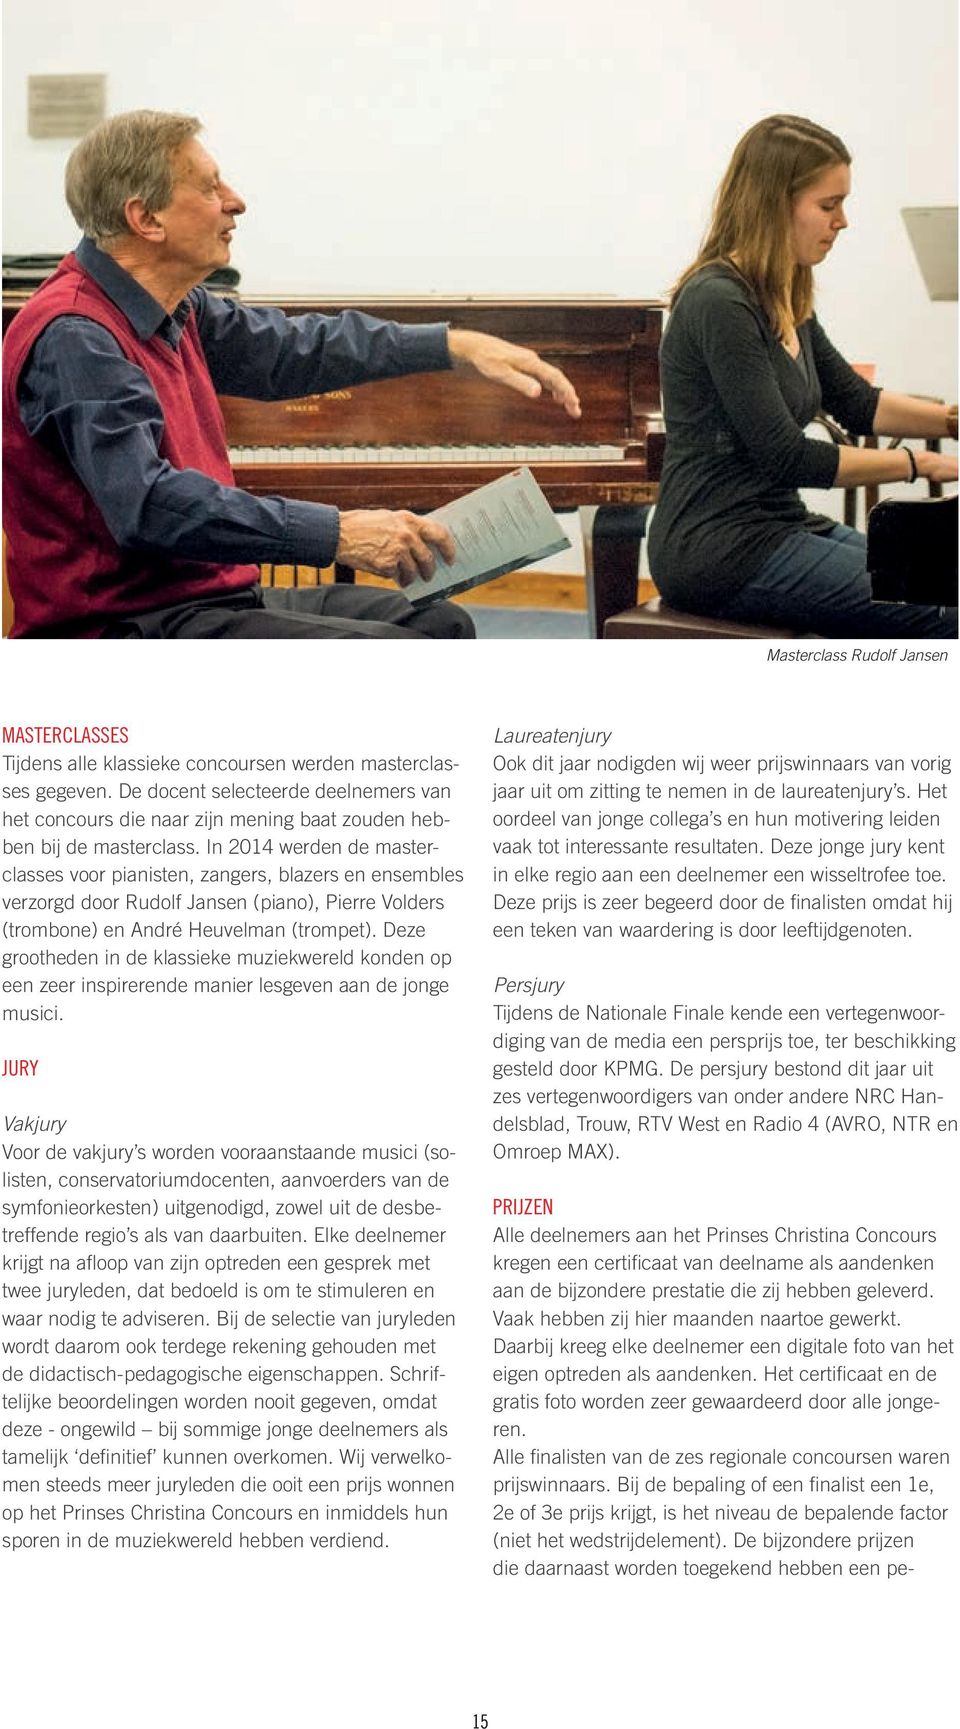 In 2014 werden de masterclasses voor pianisten, zangers, blazers en ensembles verzorgd door Rudolf Jansen (piano), Pierre Volders (trombone) en André Heuvelman (trompet).